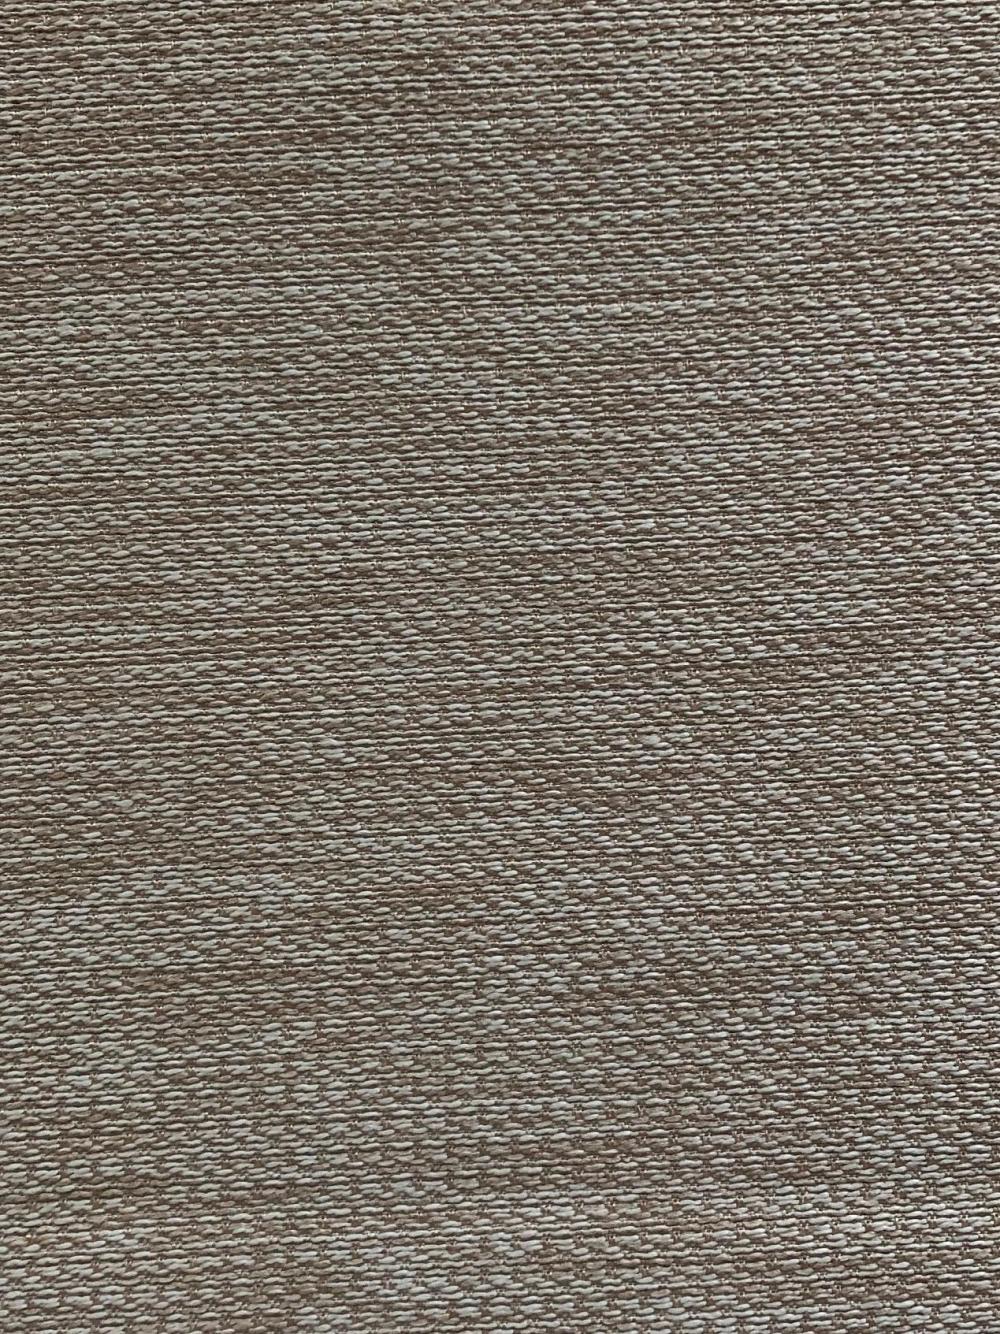 Plain Woven Material Liene Sofa Fabric